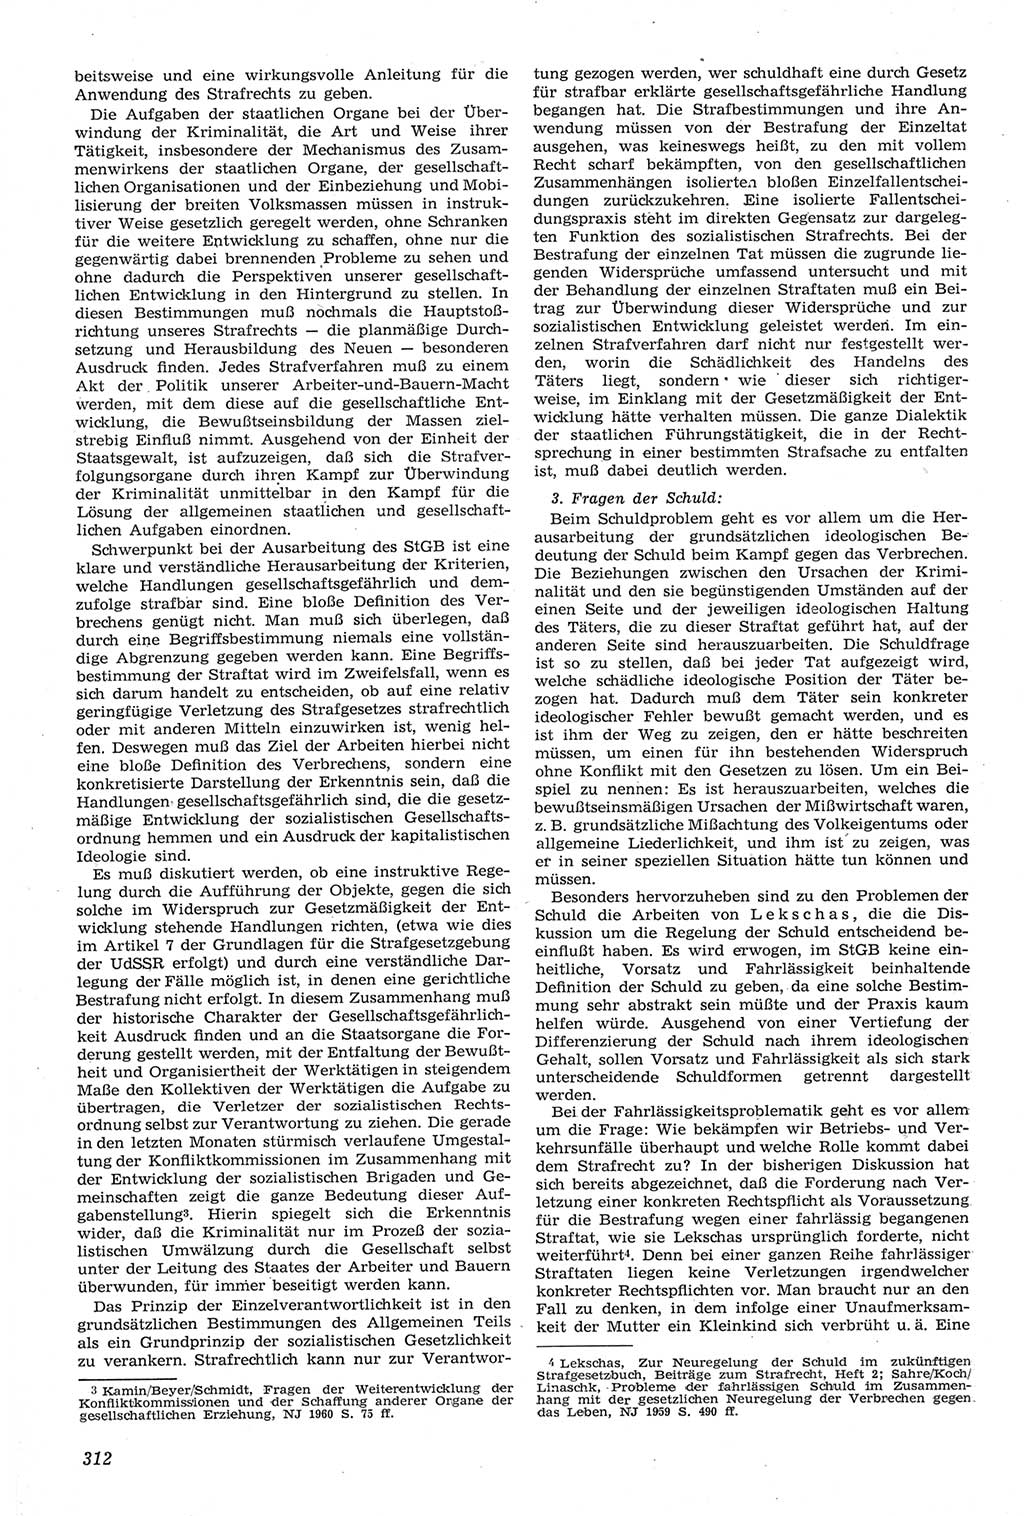 Neue Justiz (NJ), Zeitschrift für Recht und Rechtswissenschaft [Deutsche Demokratische Republik (DDR)], 14. Jahrgang 1960, Seite 312 (NJ DDR 1960, S. 312)